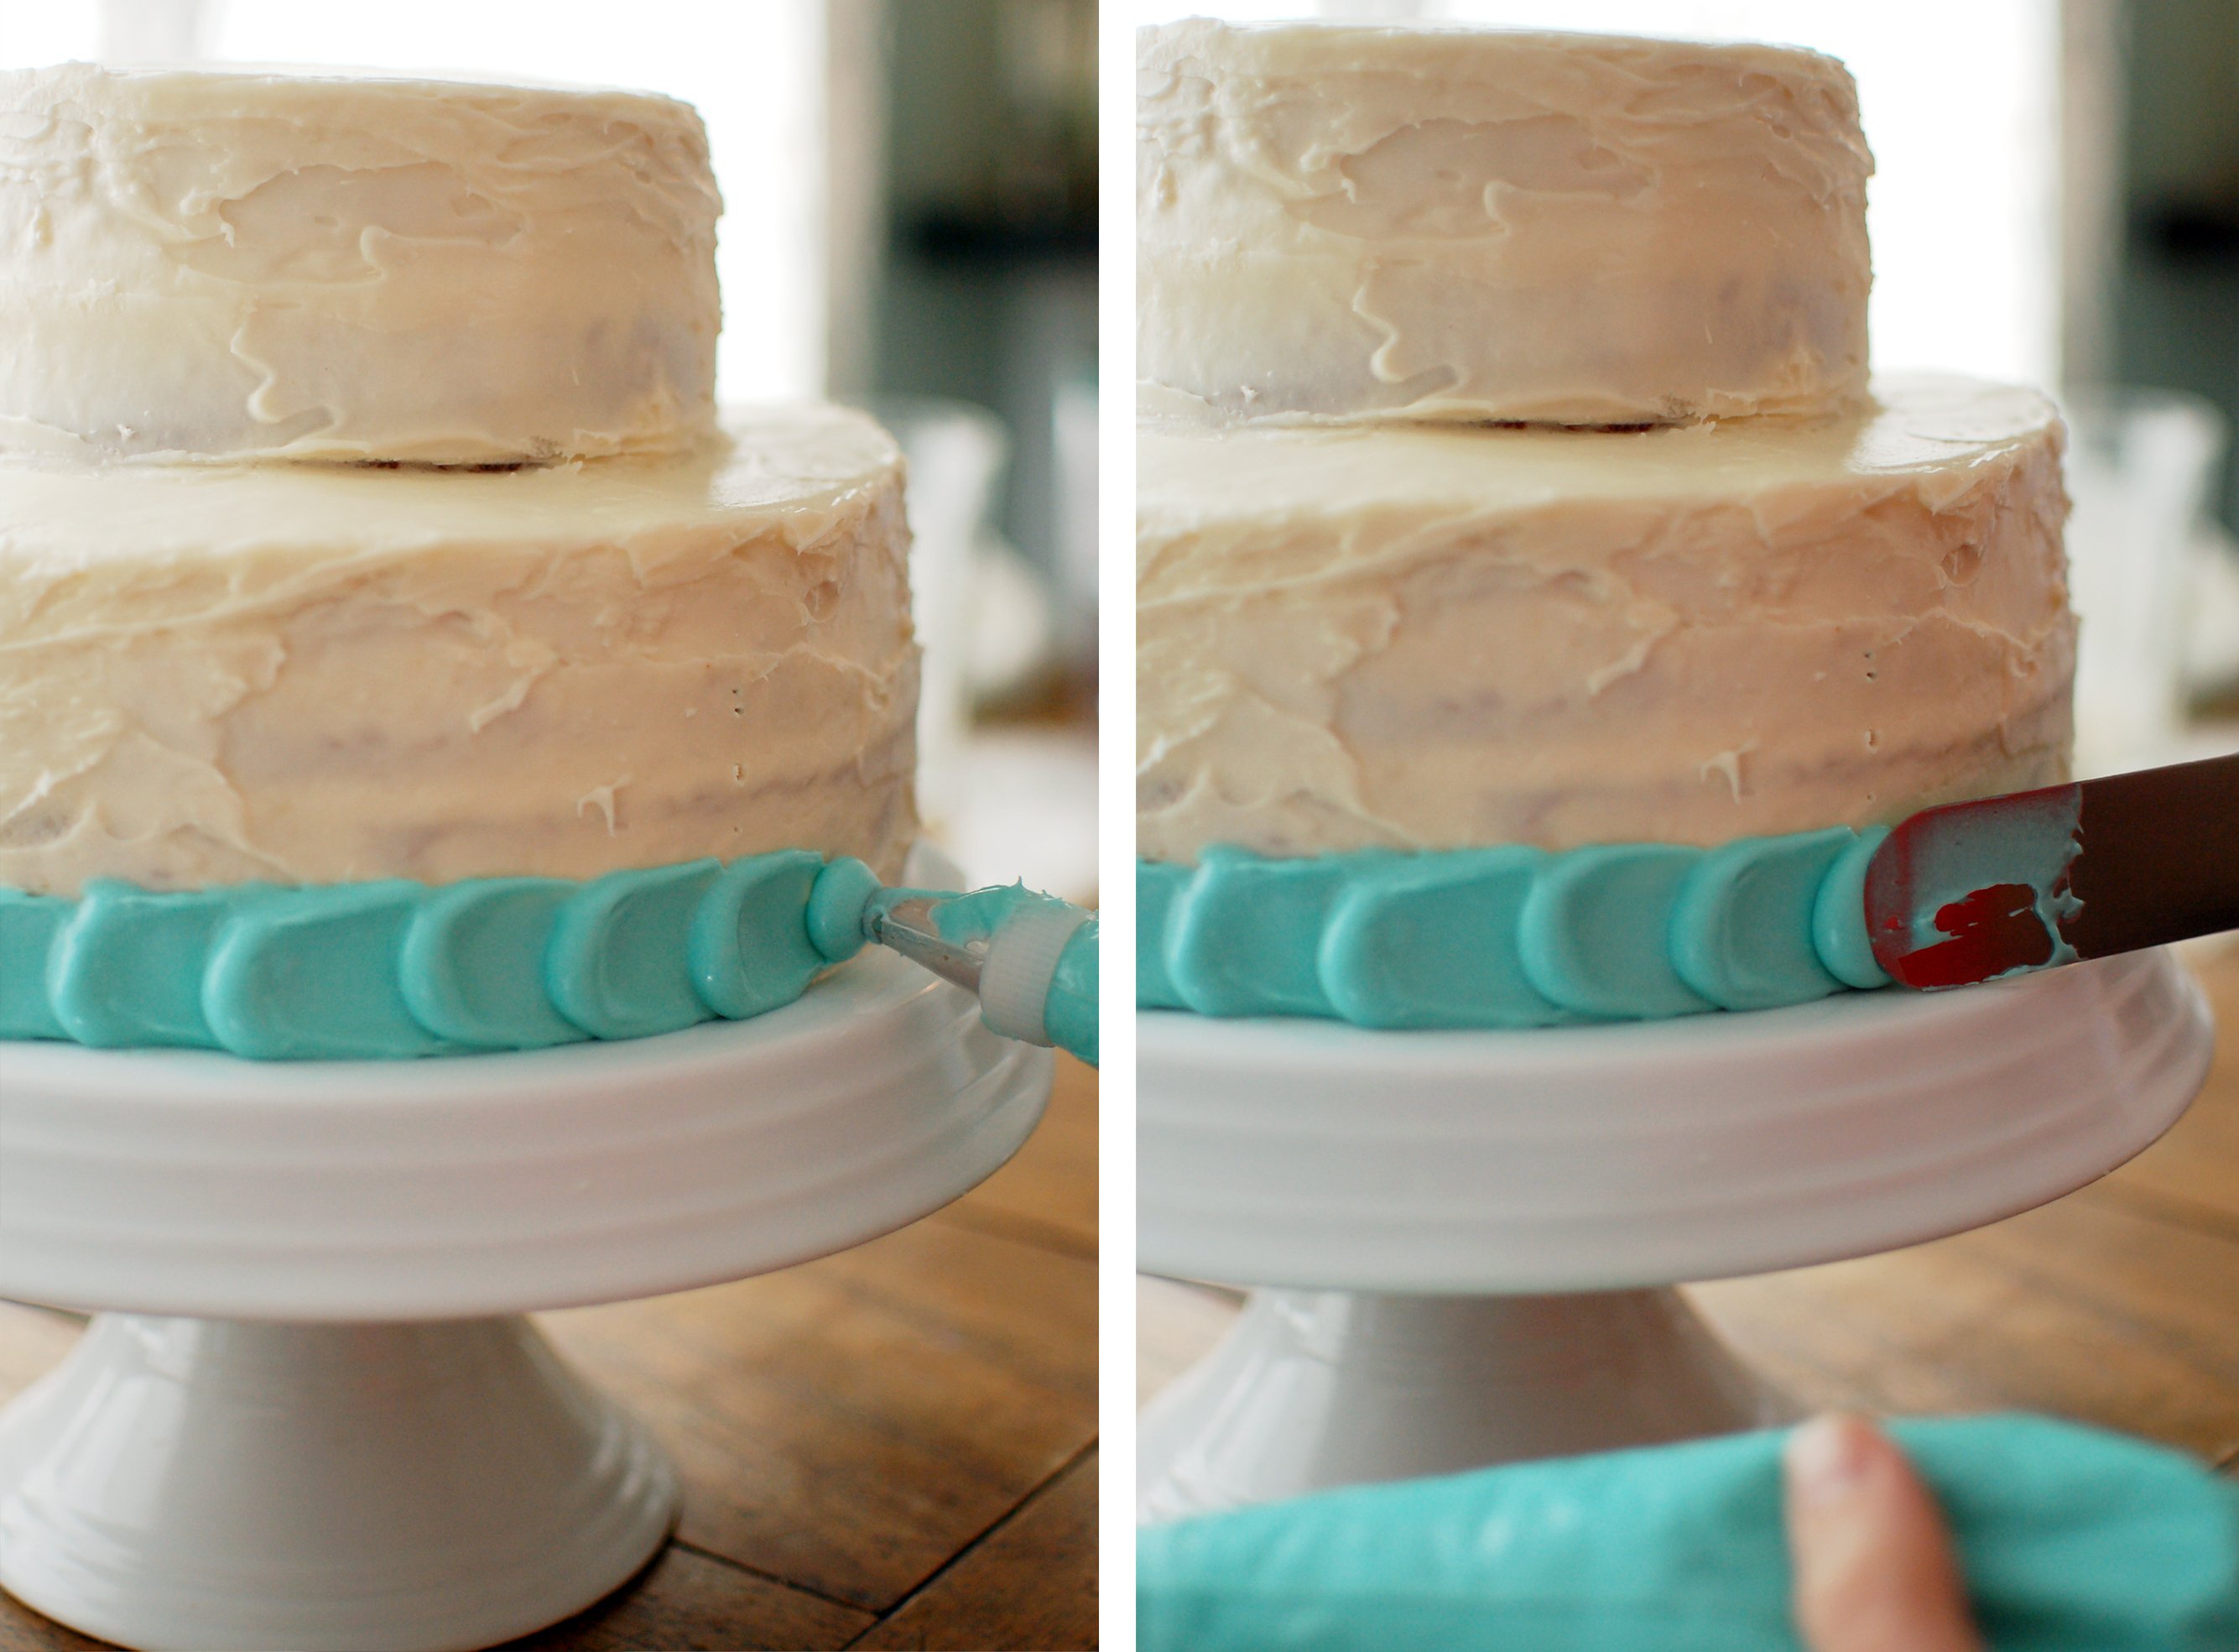 Выравнивание и украшение торта кремом чиз. Торт украшенный кремом. Украшение торта без выравнивания. Украшение боков торта. Украсить бока торта.